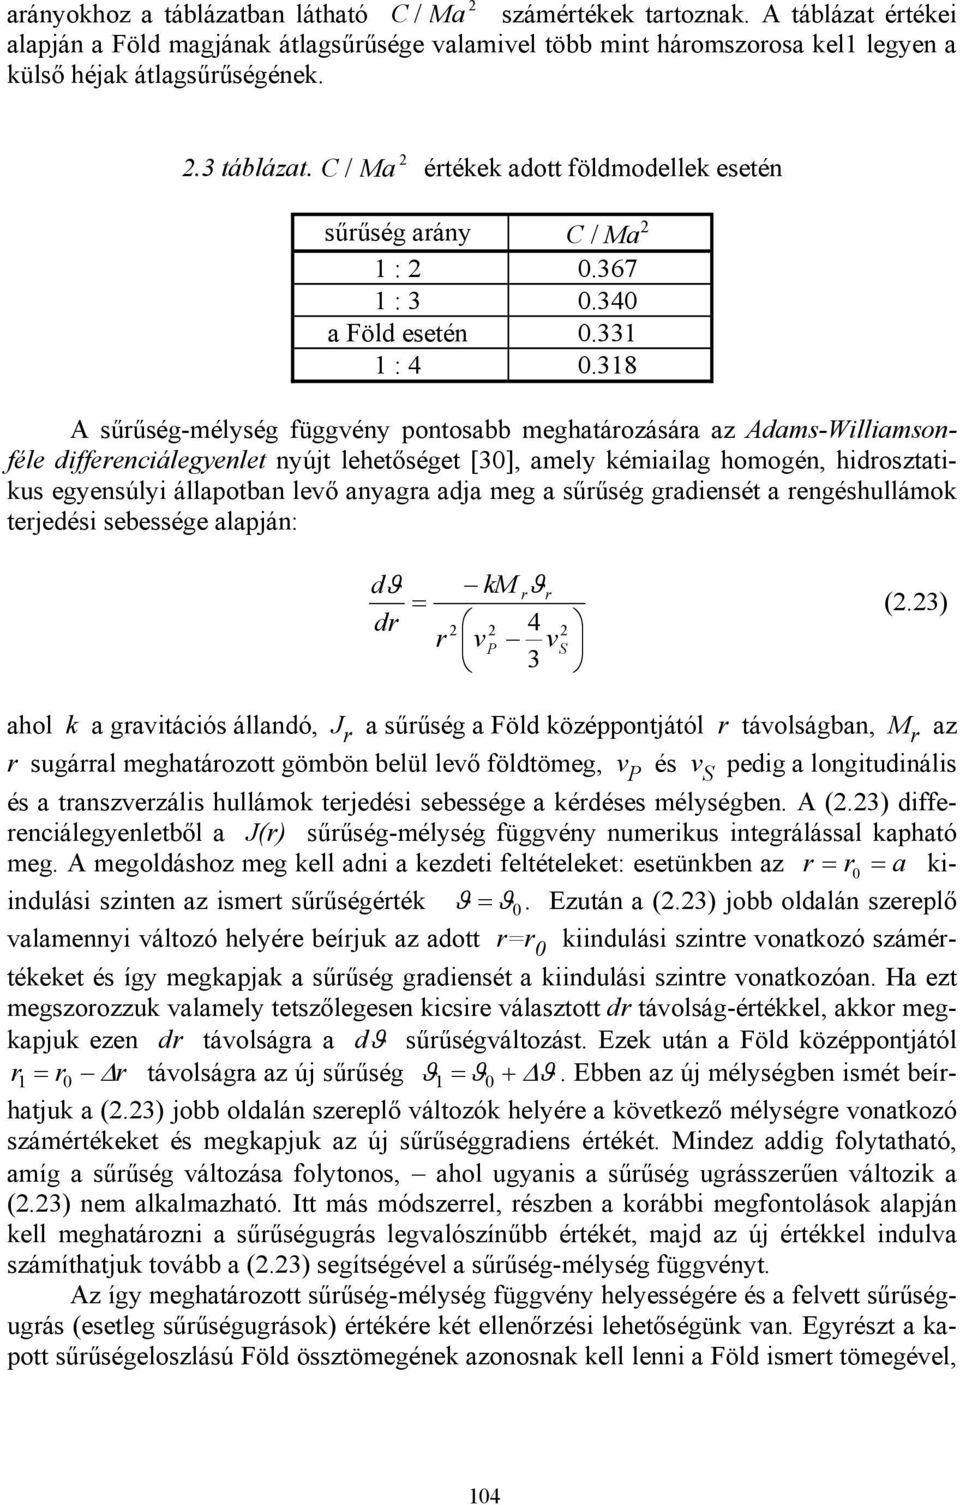 318 A sűrűség-mélység függvény pontosabb meghatározására az Adams-Williamsonféle differenciálegyenlet nyújt lehetőséget [30], amely kémiailag homogén, hidrosztatikus egyensúlyi állapotban levő